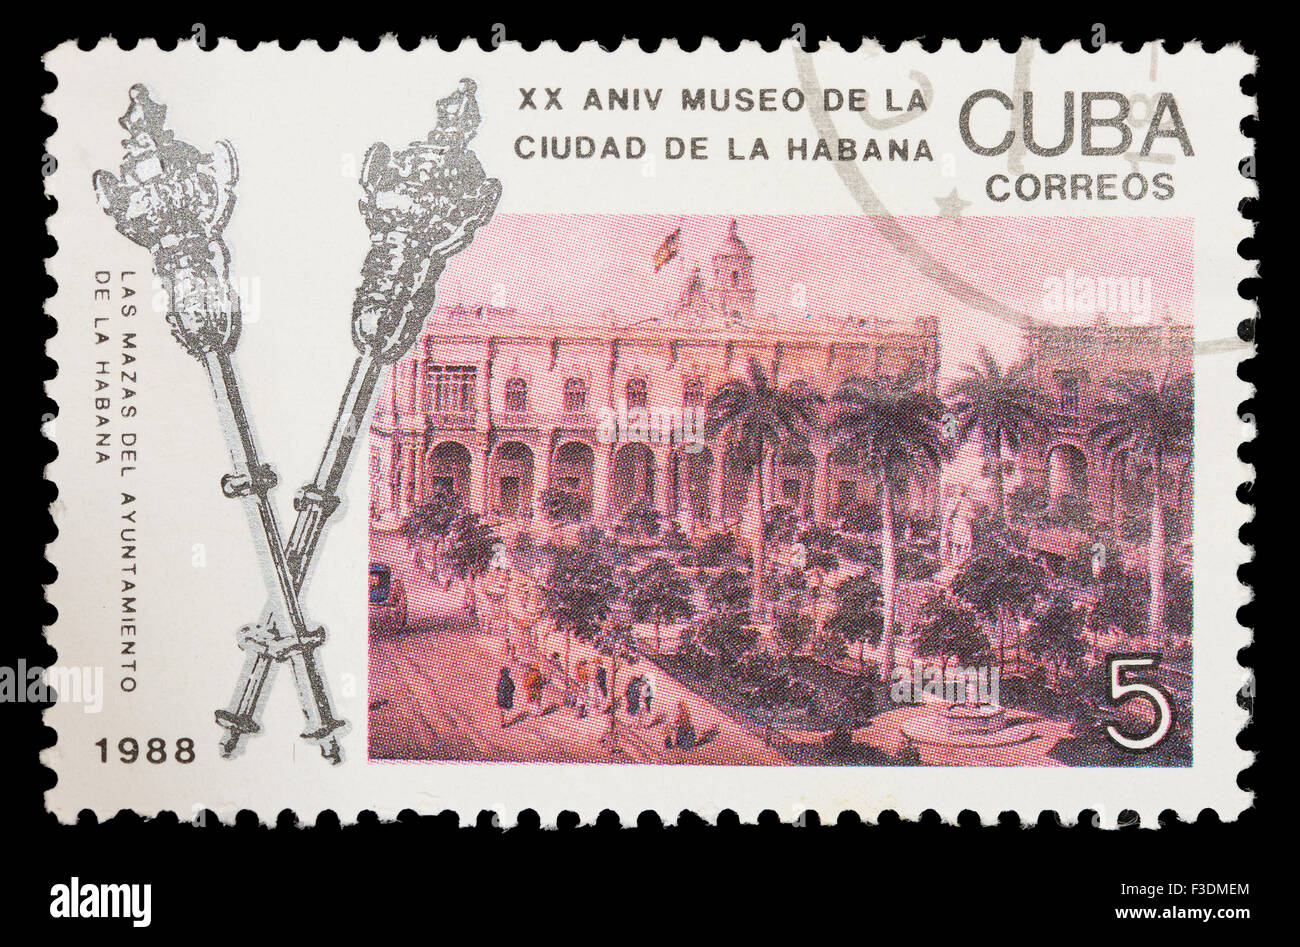 Kuba - ca. 1988: Eine Briefmarke gedruckt in Kuba zeigt die Havanna-Museum zum XX Geburtstag, ca. 1988 Stockfoto